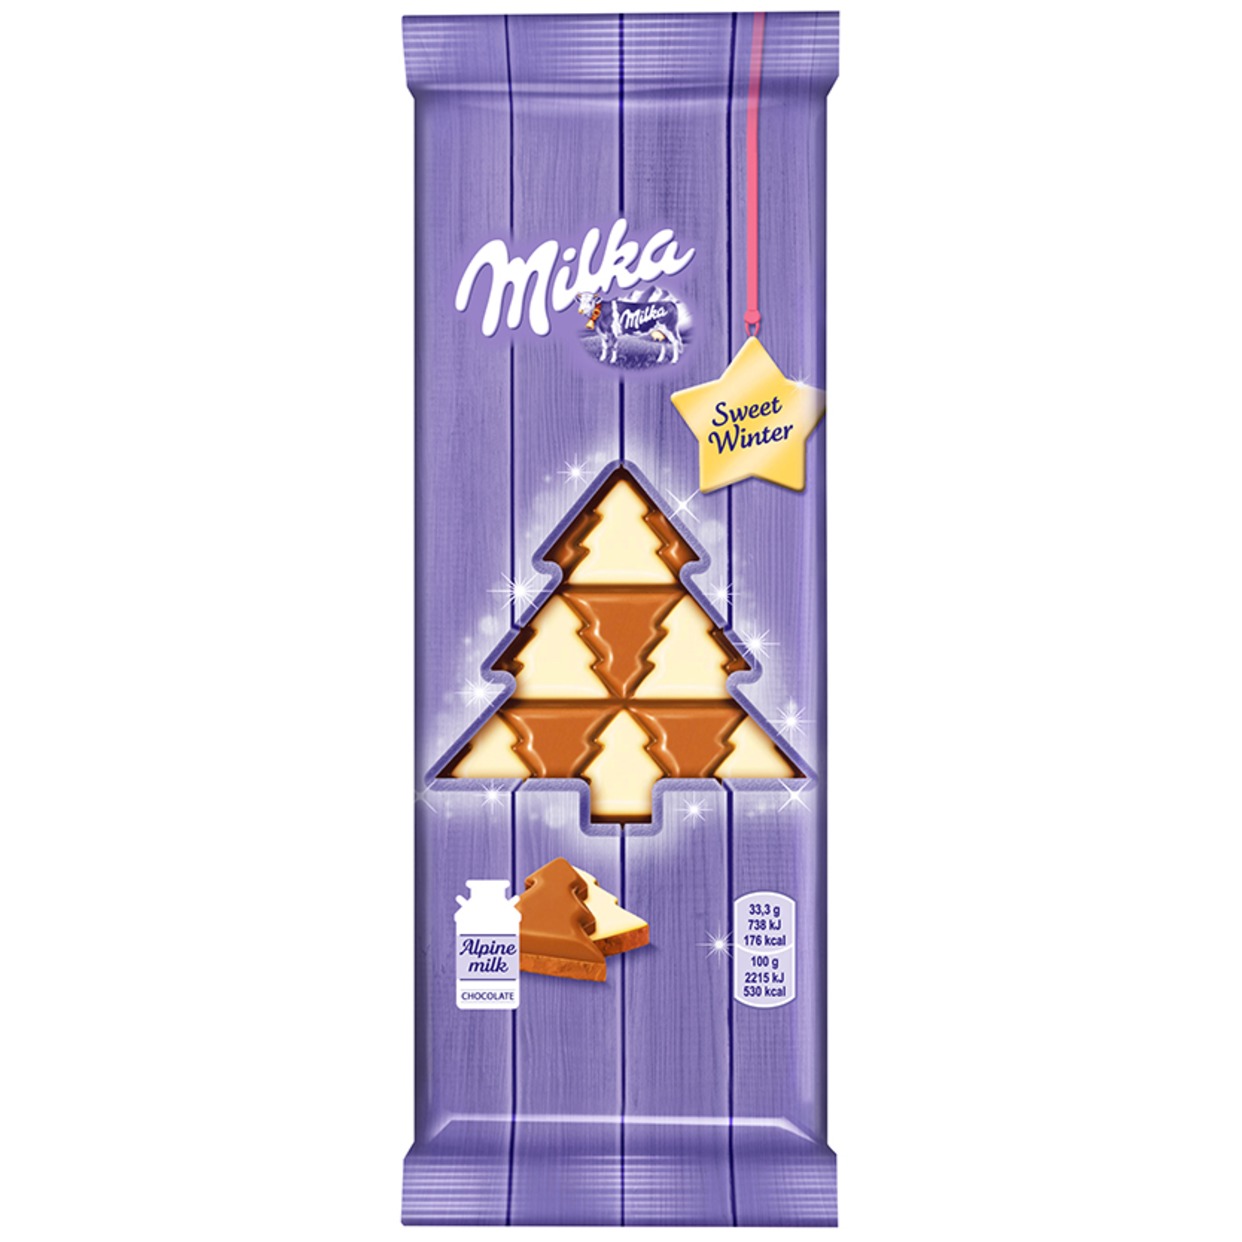 Шоколад Milka Sweet Winter молочный и белый 100г по акции в Пятерочке